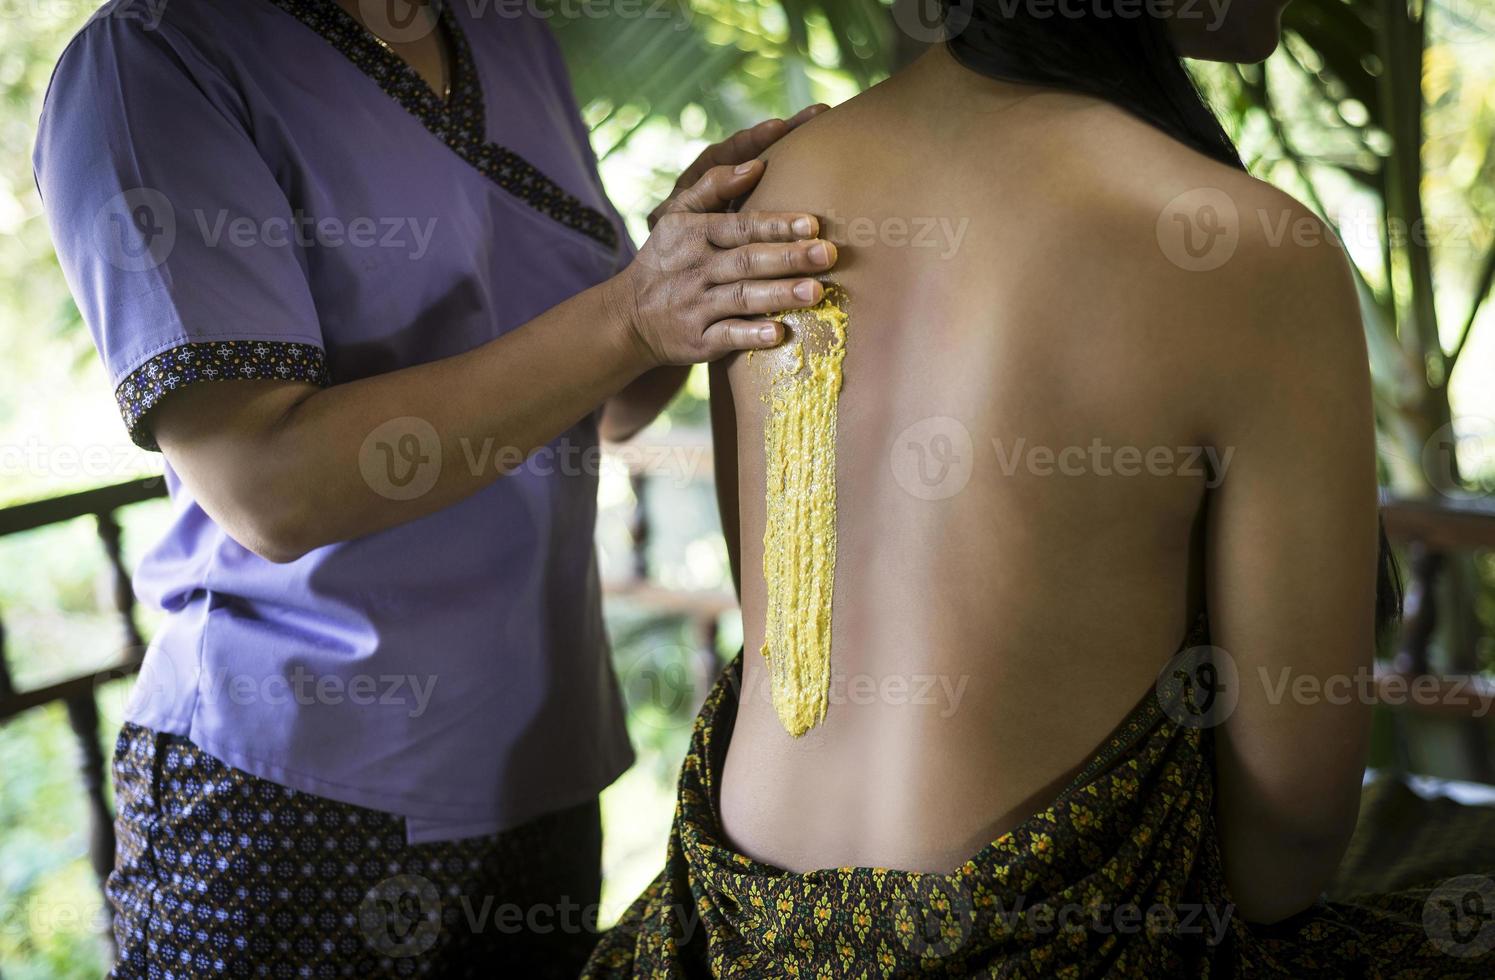 massaggio asiatico spa trattamento di bellezza naturale biologico con pasta scrub alla curcuma foto